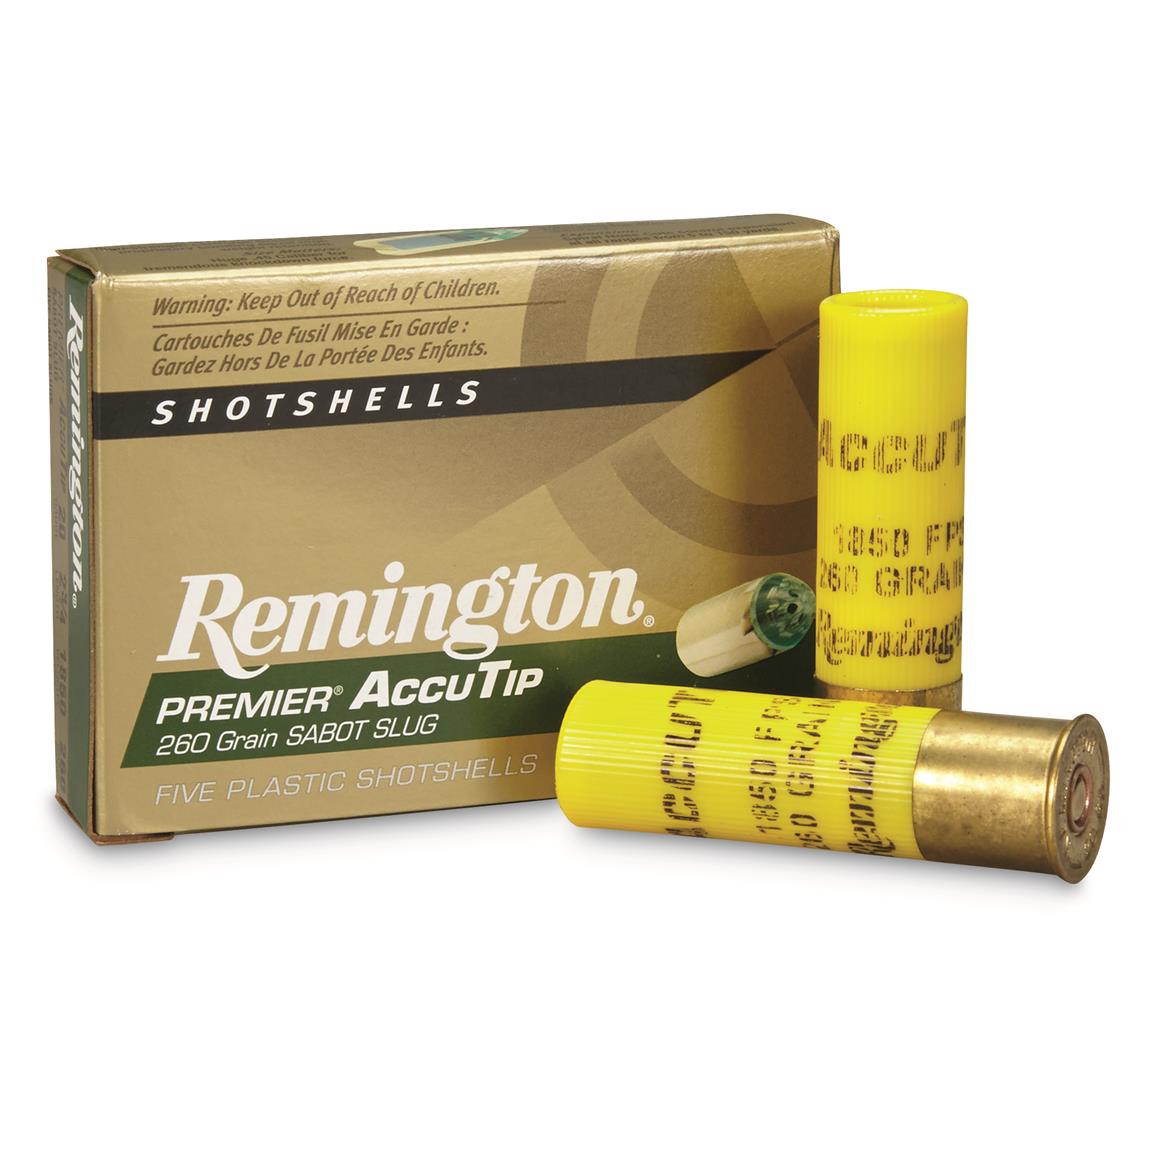 Remington Premier, 20 Gauge, 2 3/4", 260 Grain, AccuTip Bonded Sabot Slugs, 5 Rounds